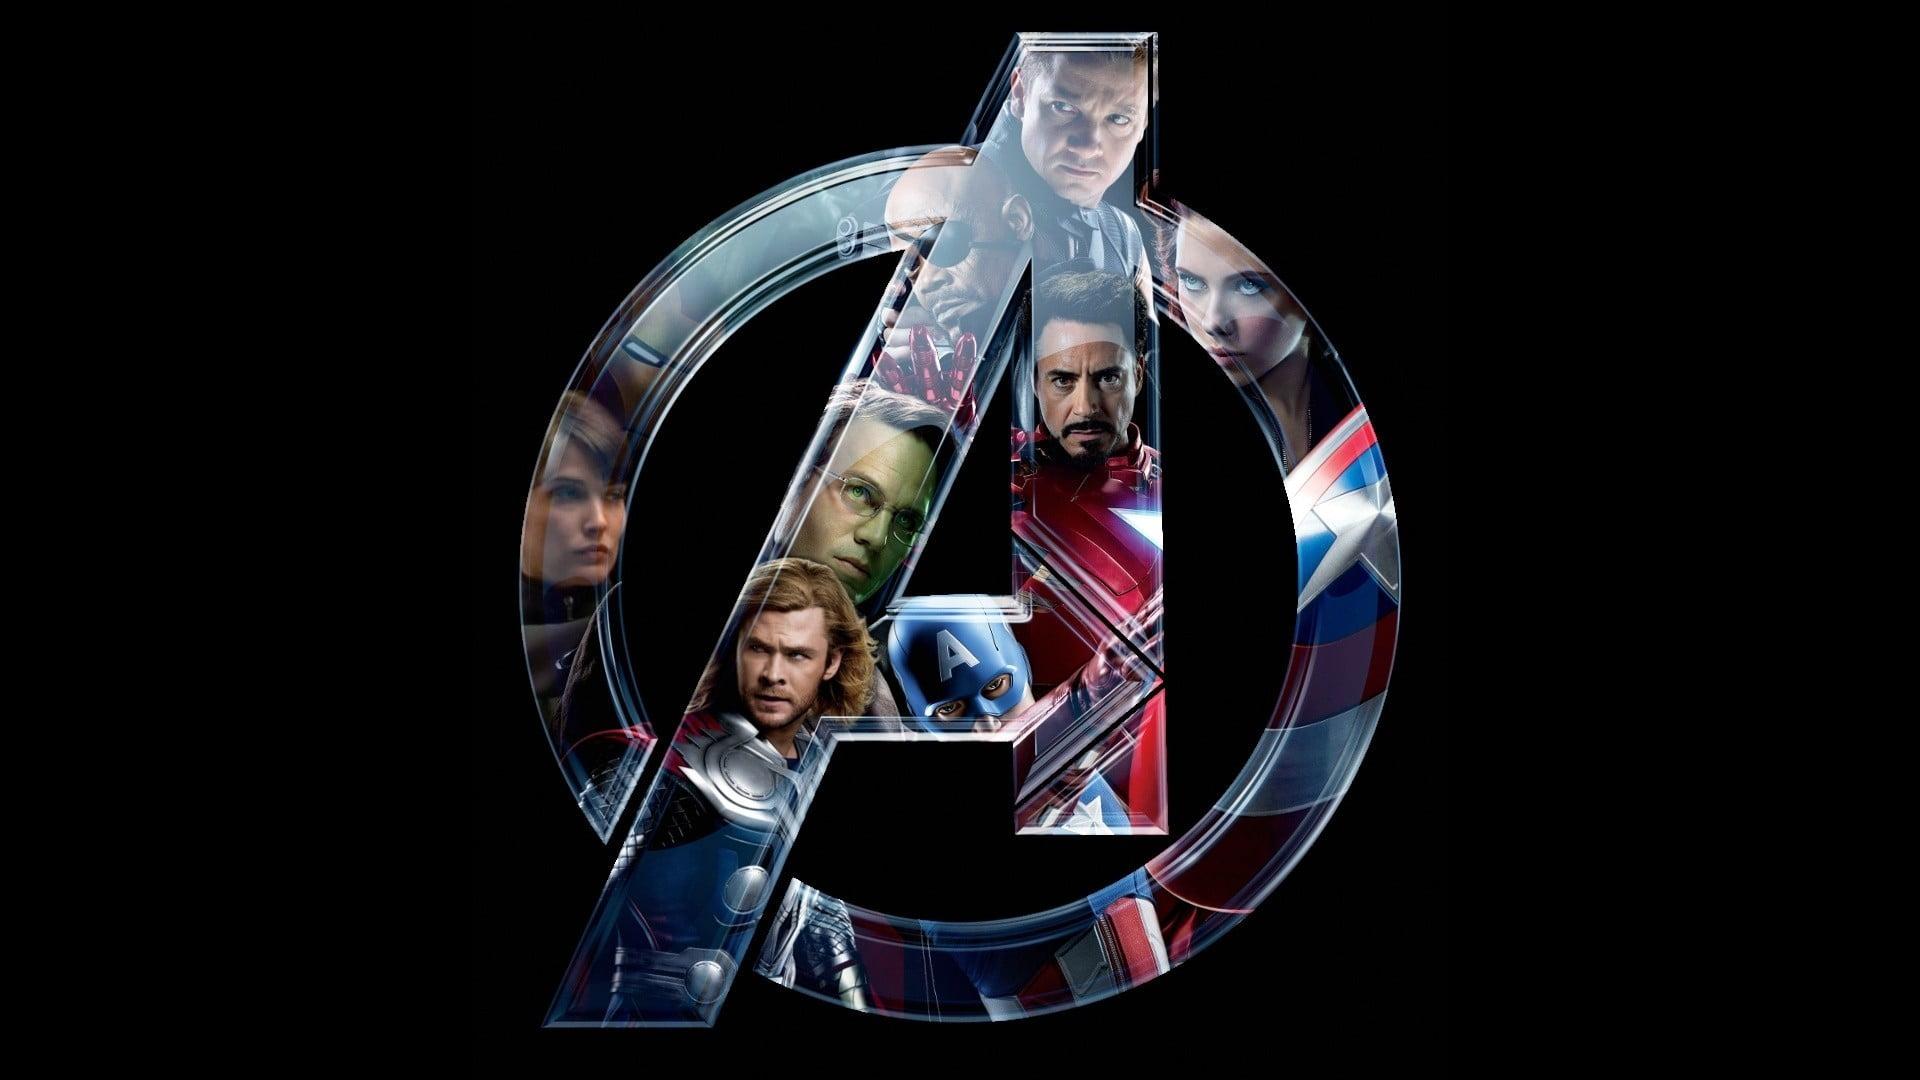 Marvel Avengers logo, The Avengers, Black Widow, Scarlett Johansson